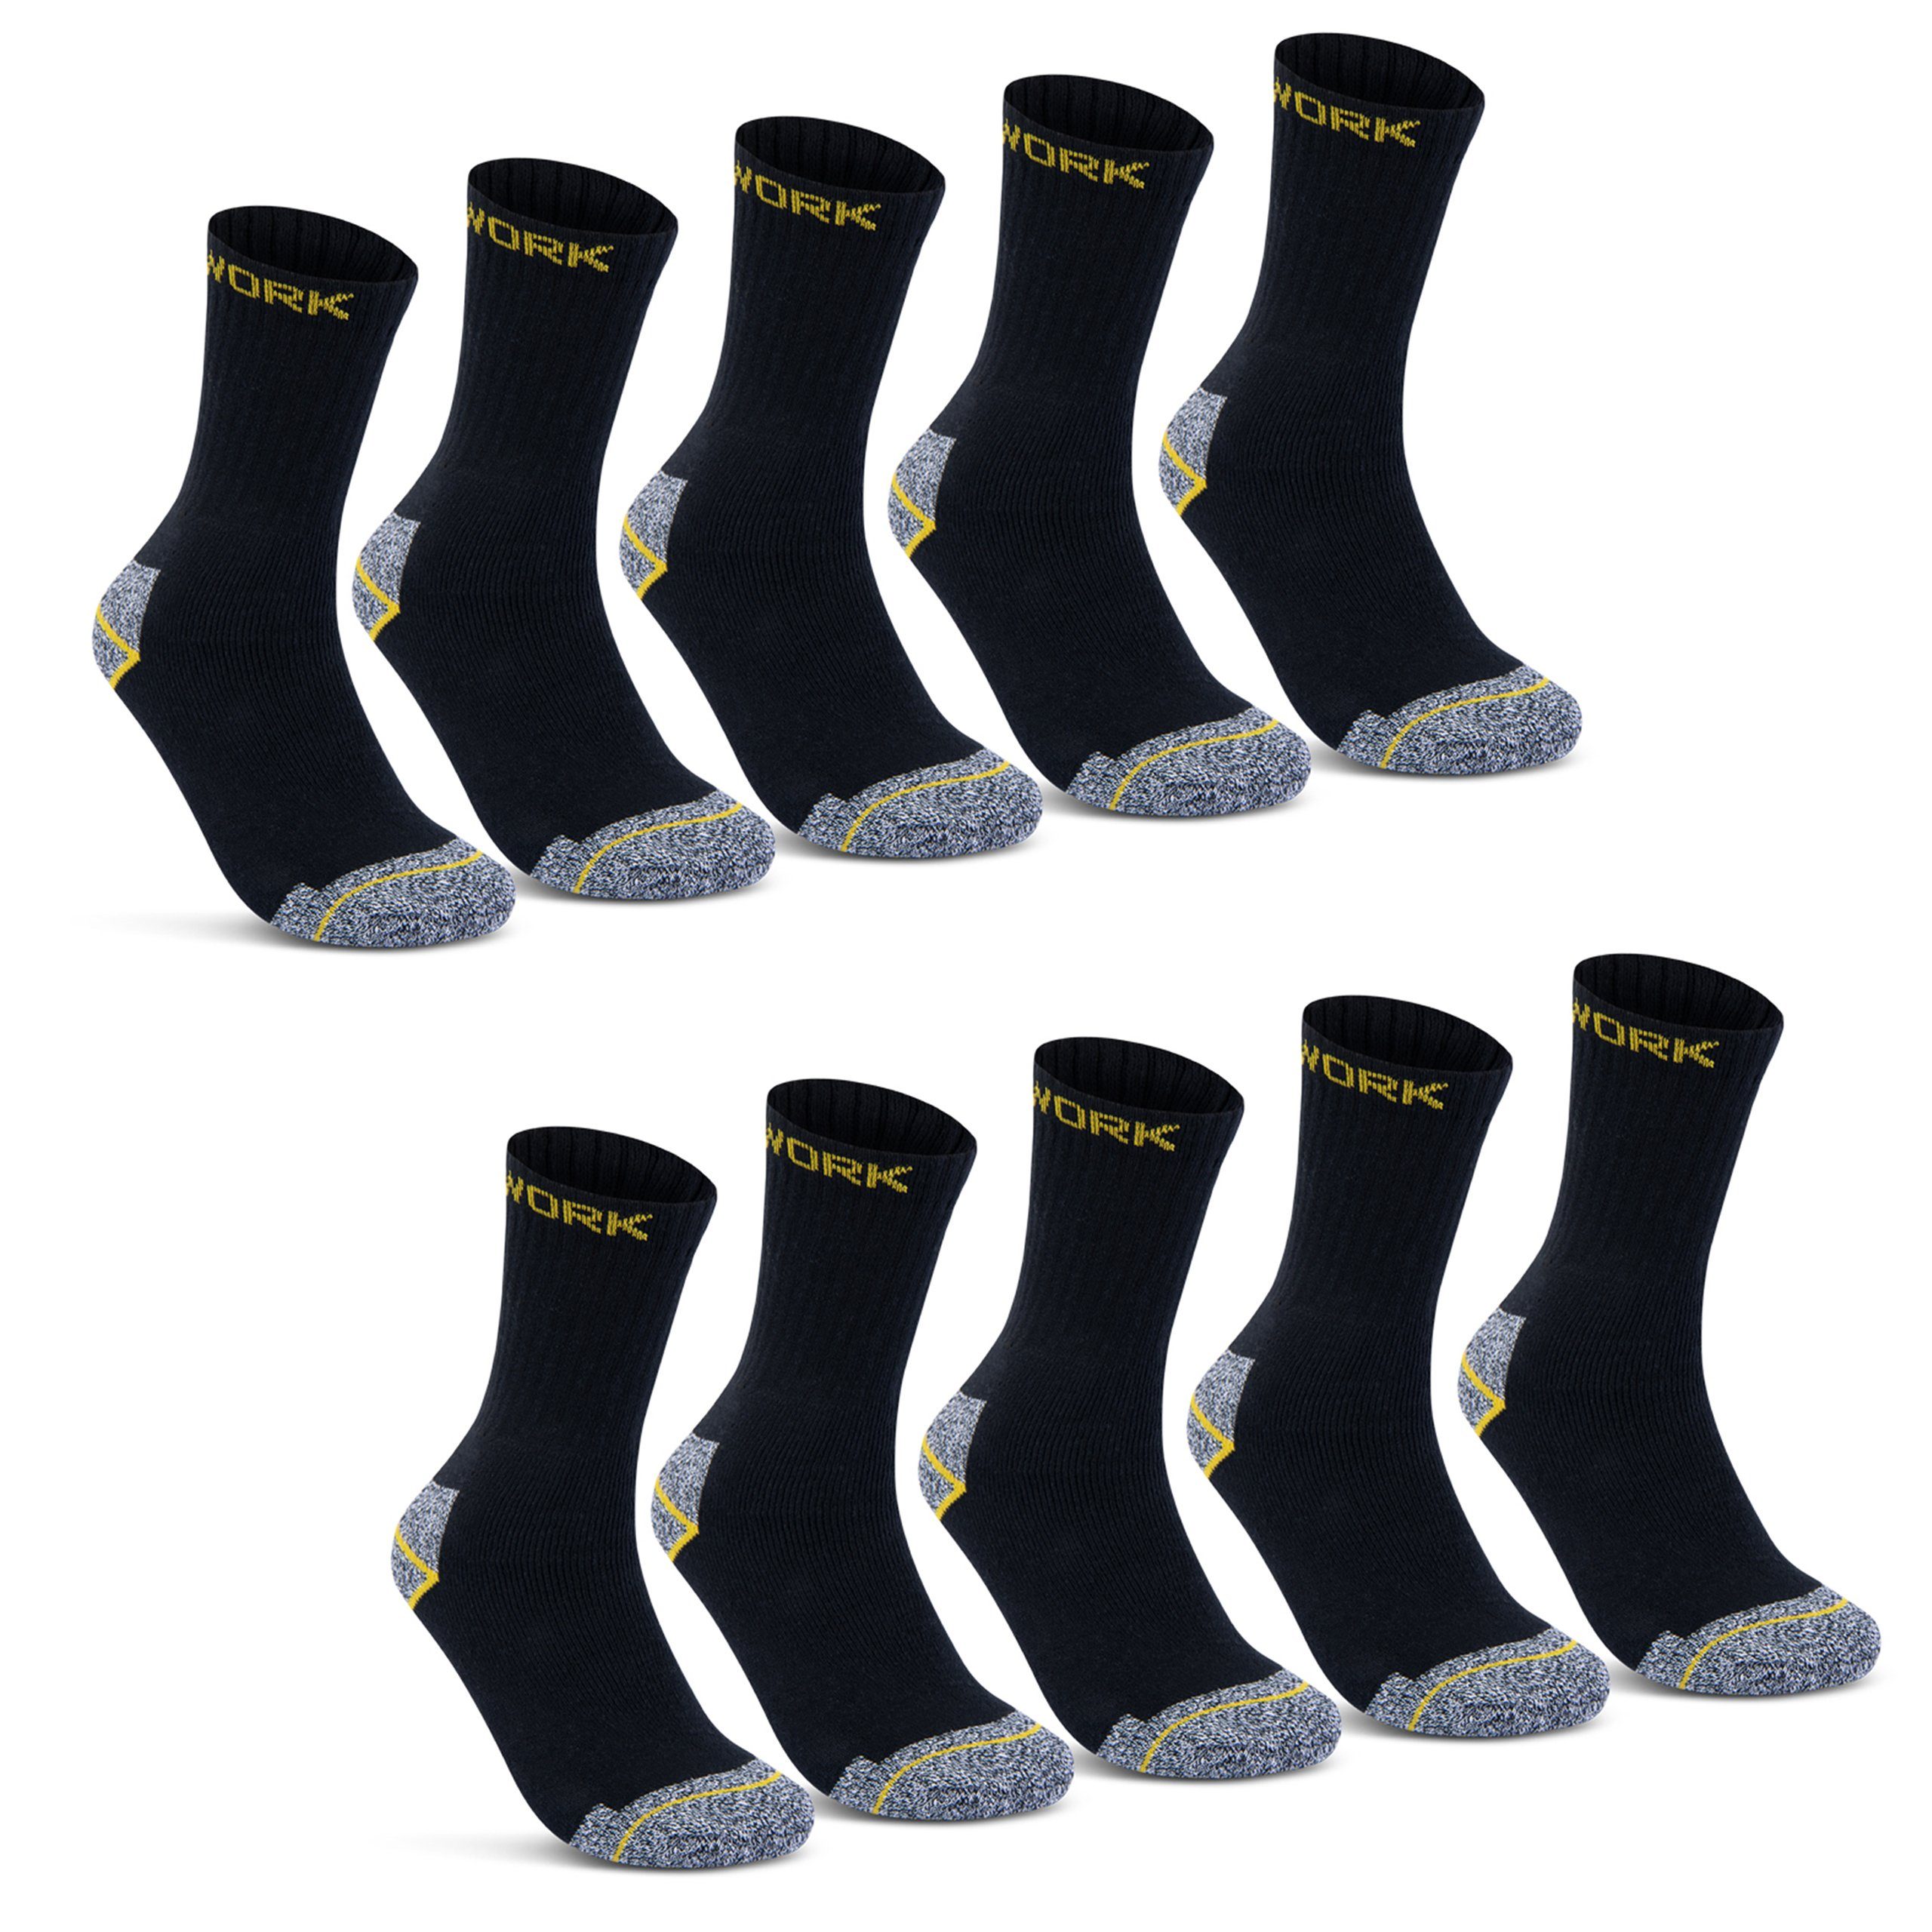 atmungsaktiv sockenkauf24 Vollfrottee Socken Baumwolle Grau-Meliert (10-Paar) Herren verstärkt Arbeitssocken WORK